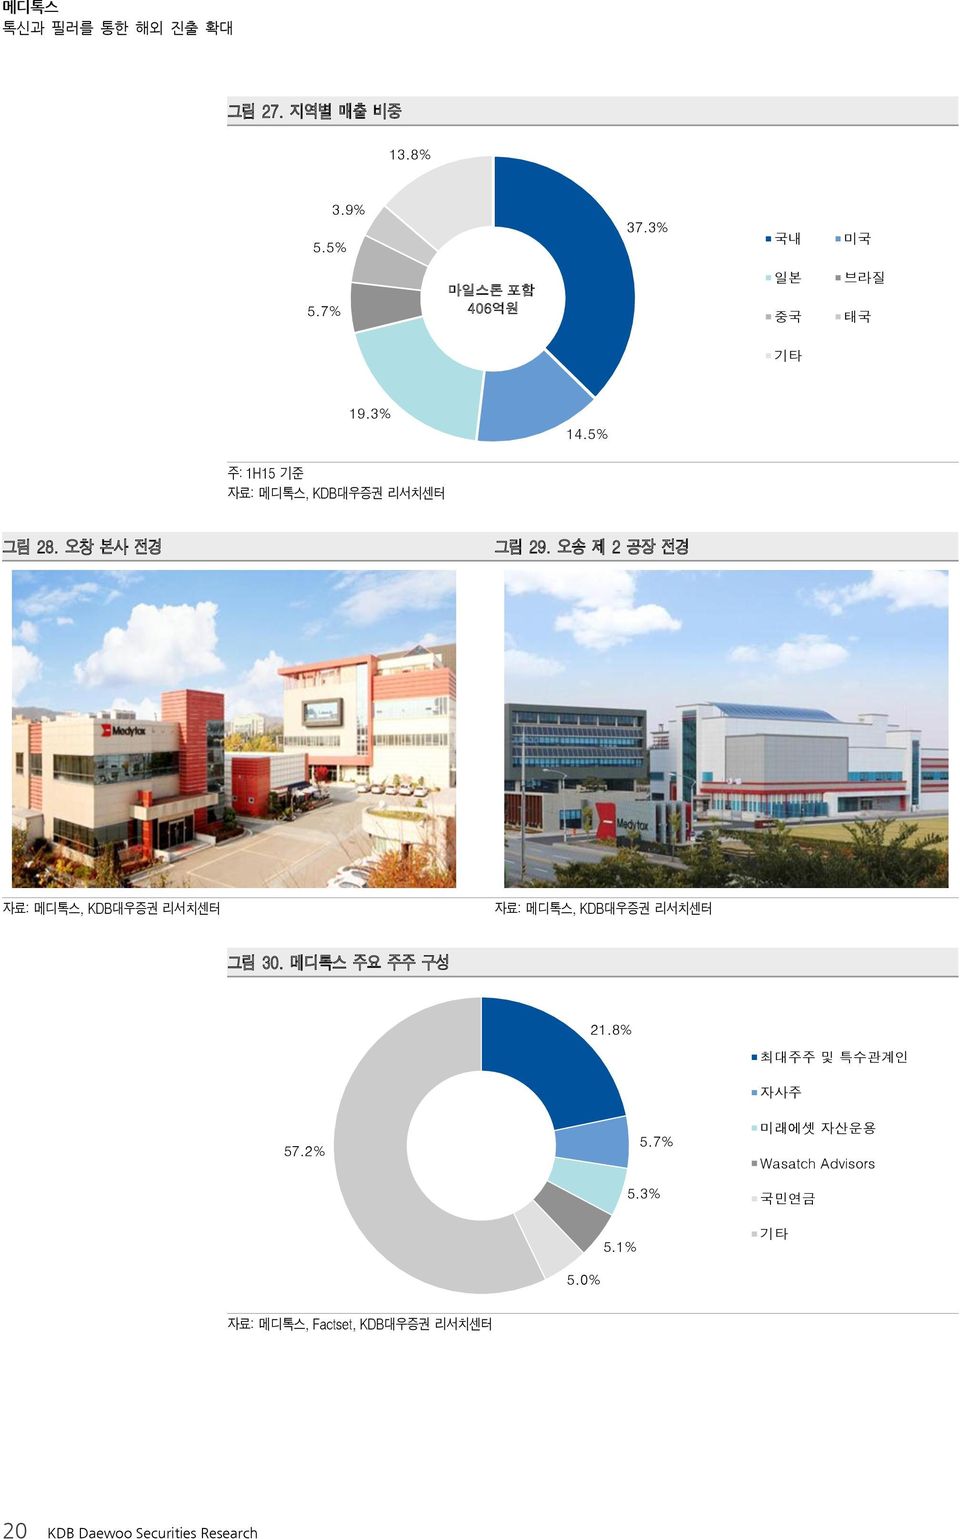 오송 제 2 공장 전경 그림 3. 메디톡스 주요 주주 구성 21.8% 57.2% 5.1% 5.7% 5.